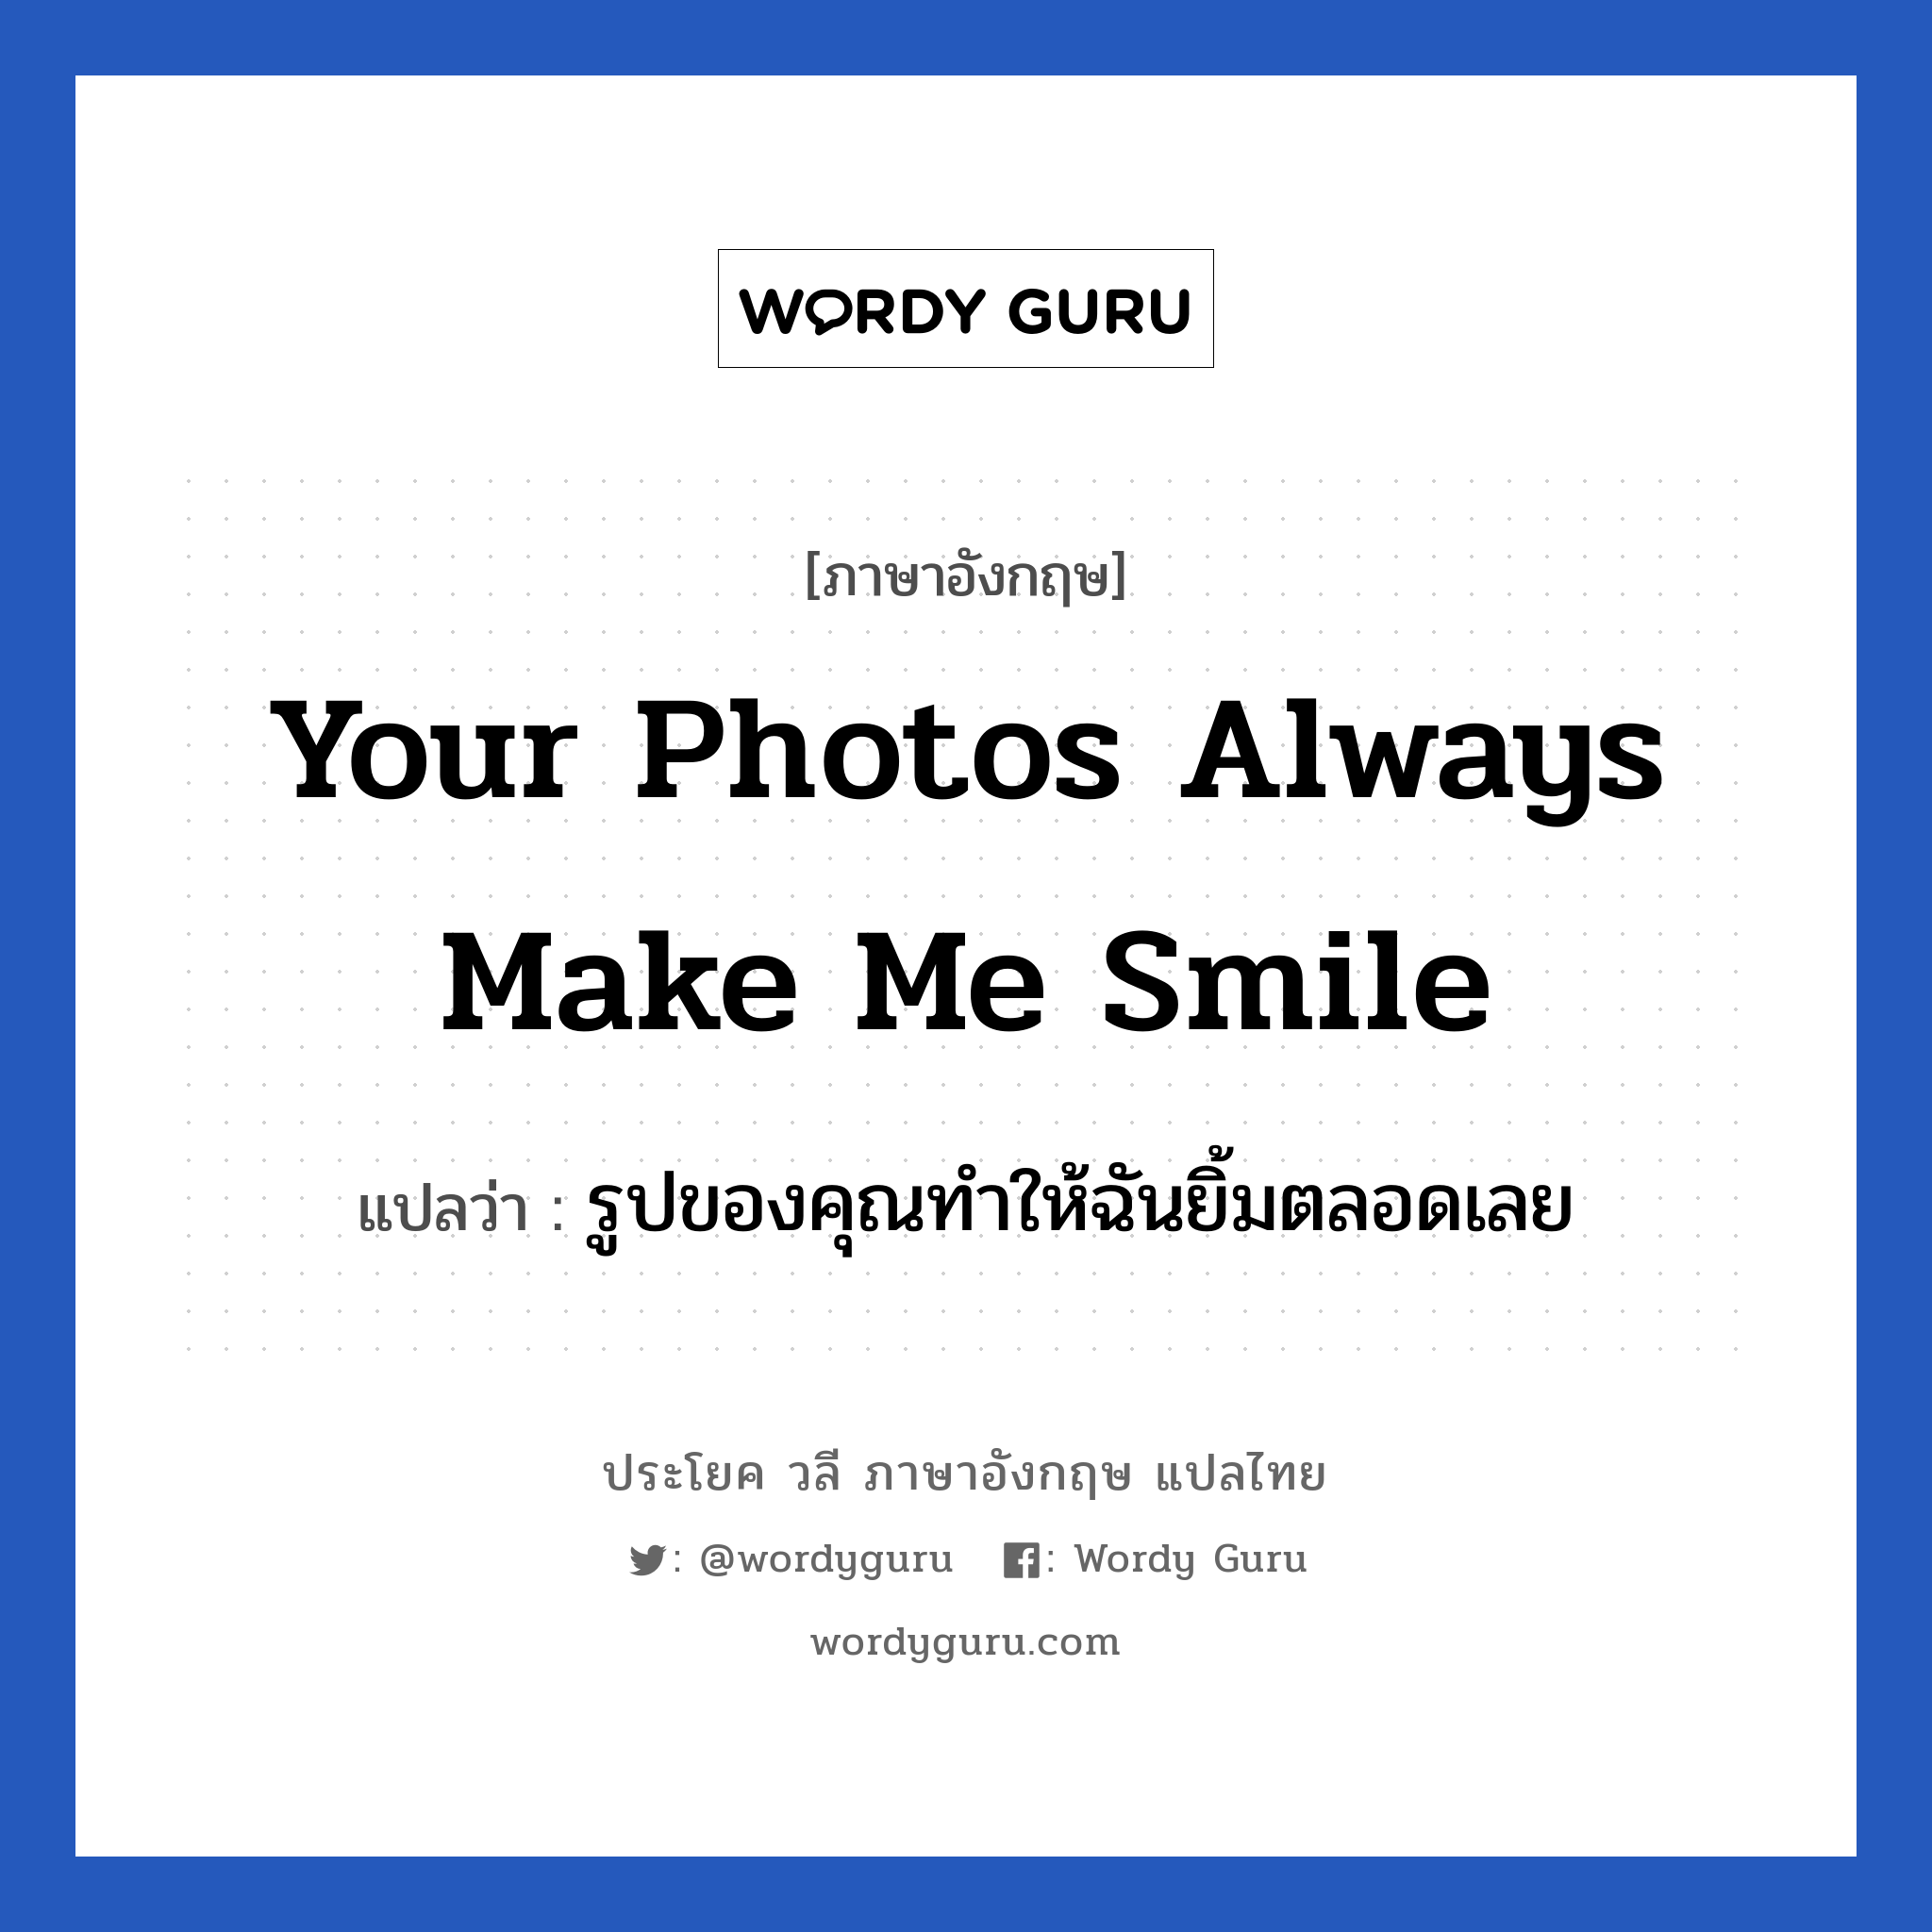 รูปของคุณทำให้ฉันยิ้มตลอดเลย ภาษาอังกฤษ?, วลีภาษาอังกฤษ รูปของคุณทำให้ฉันยิ้มตลอดเลย แปลว่า Your photos always make me smile หมวด เด็ก